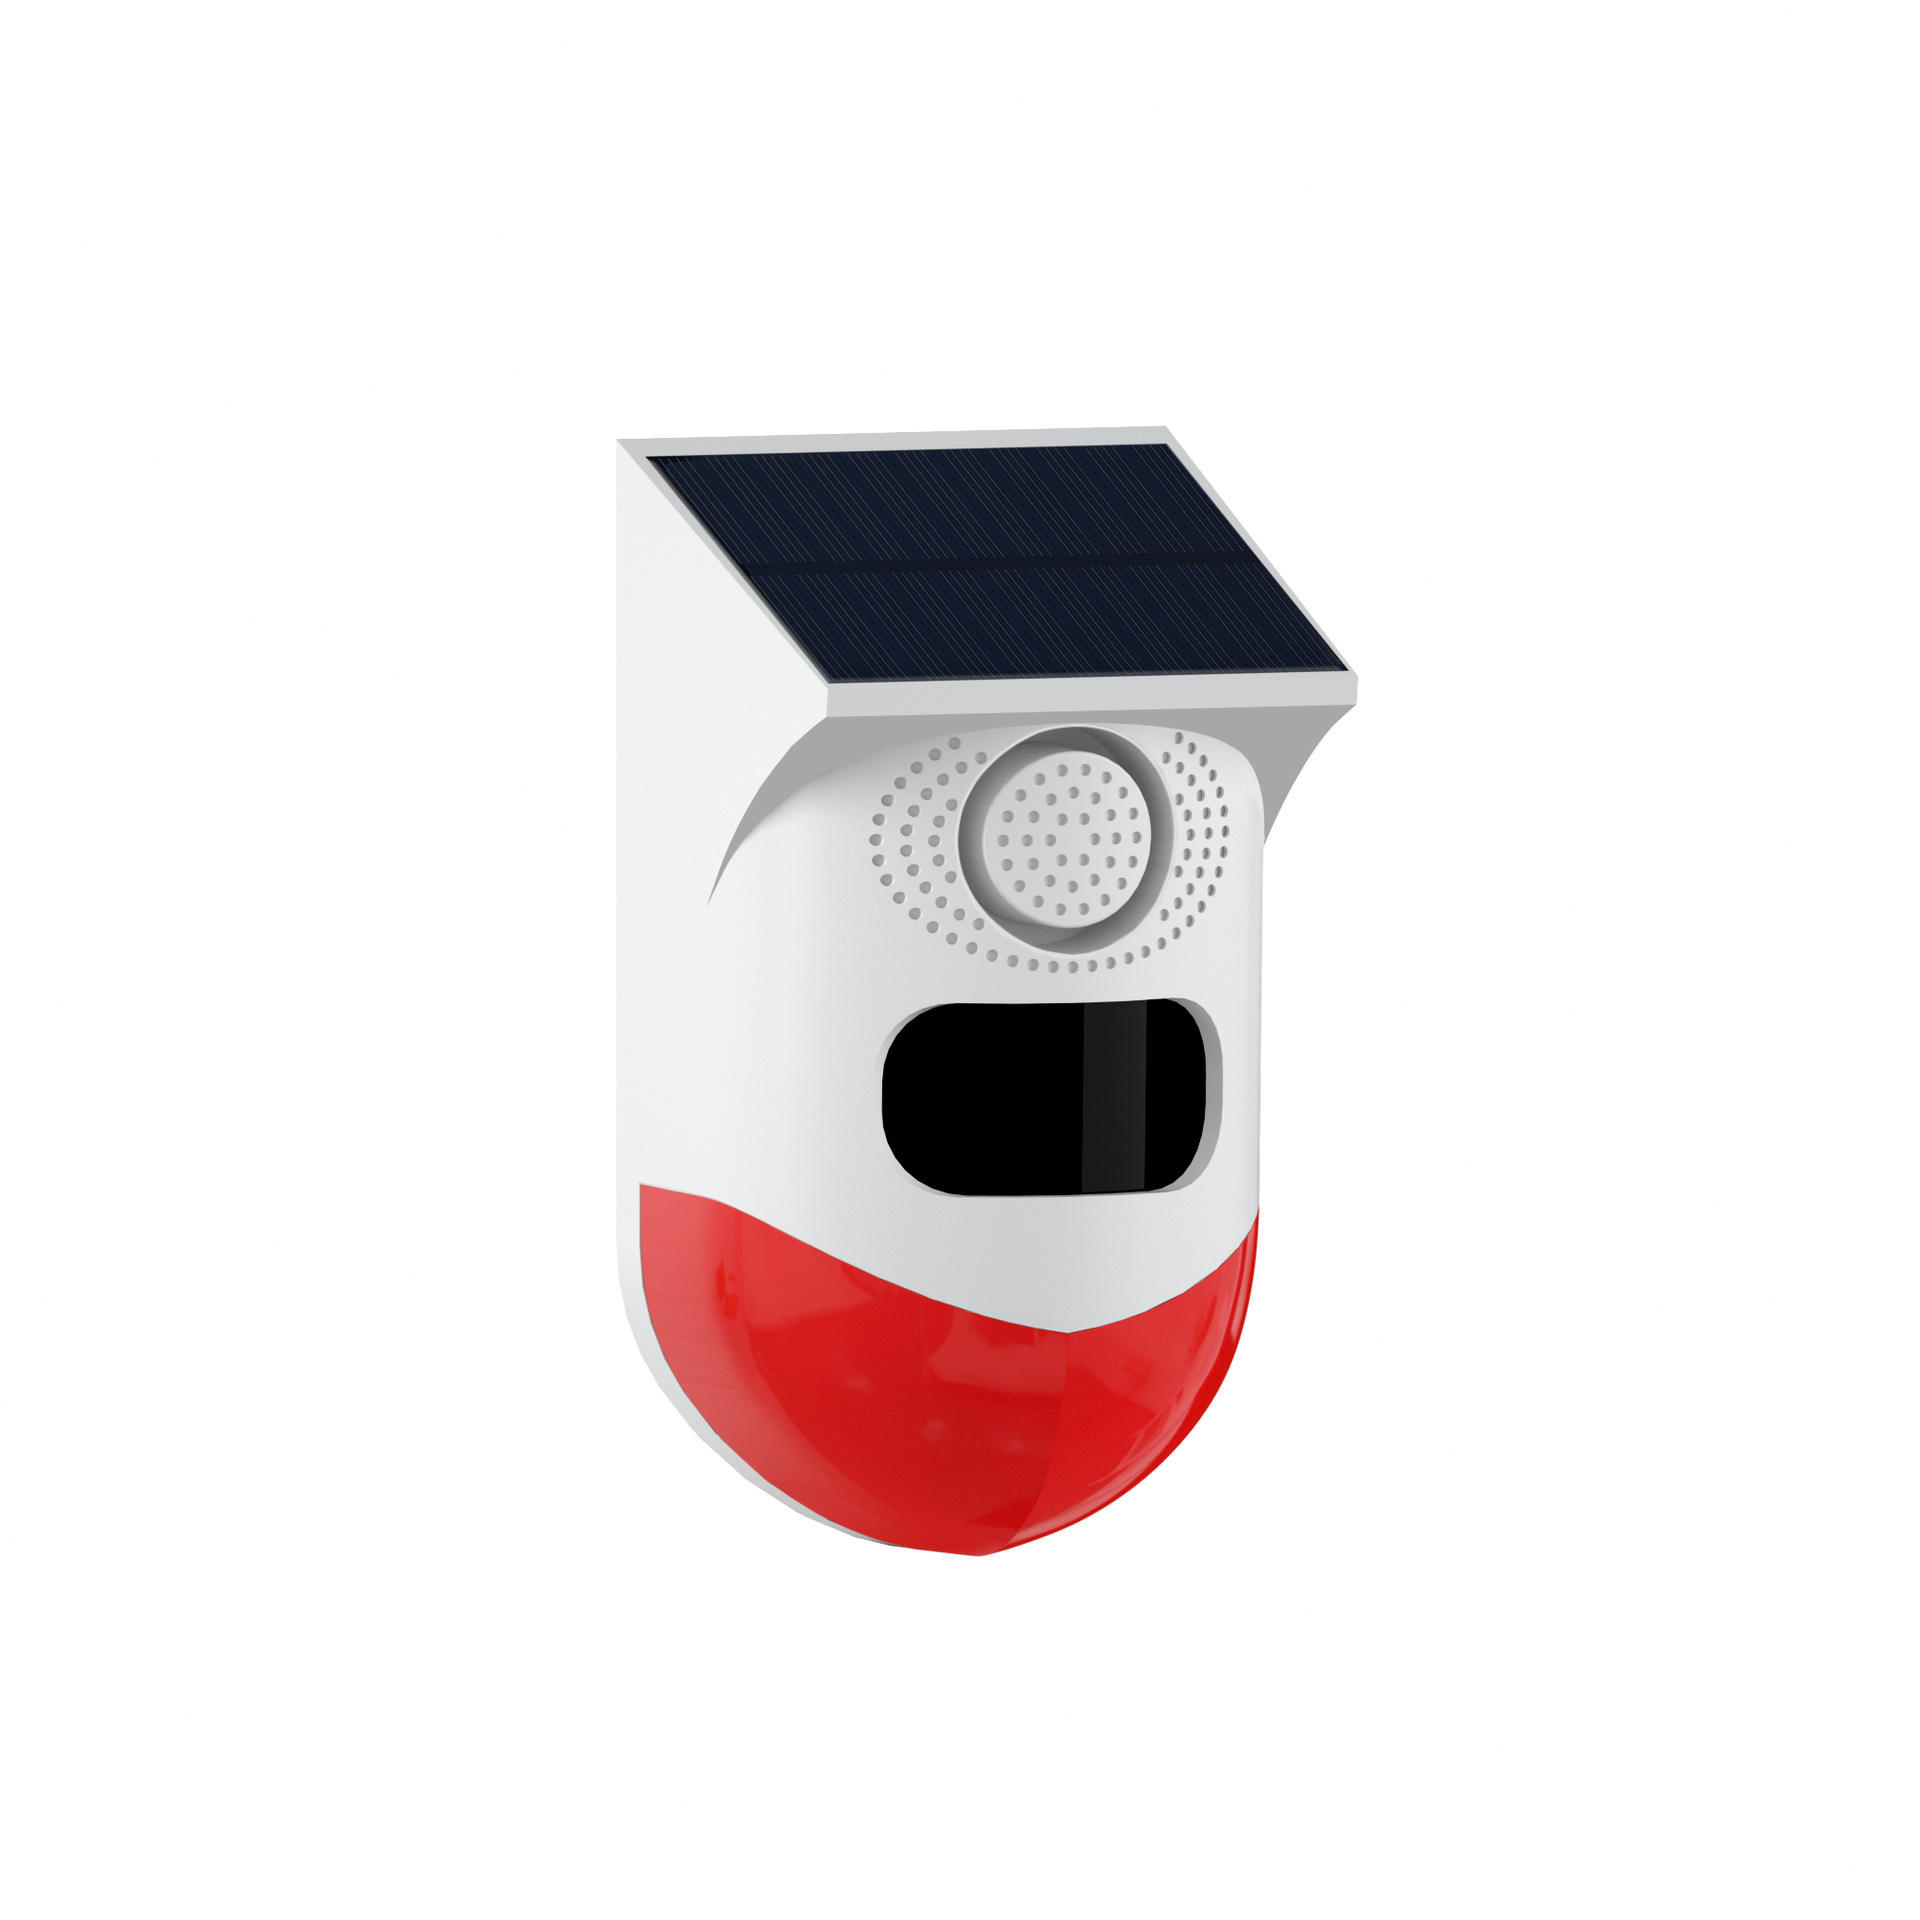 モーションセンサー付きWiFiソーラーアラームライトPIRセンサー赤外線検出器屋外ソーラーアラーム家庭用防水モニター付き